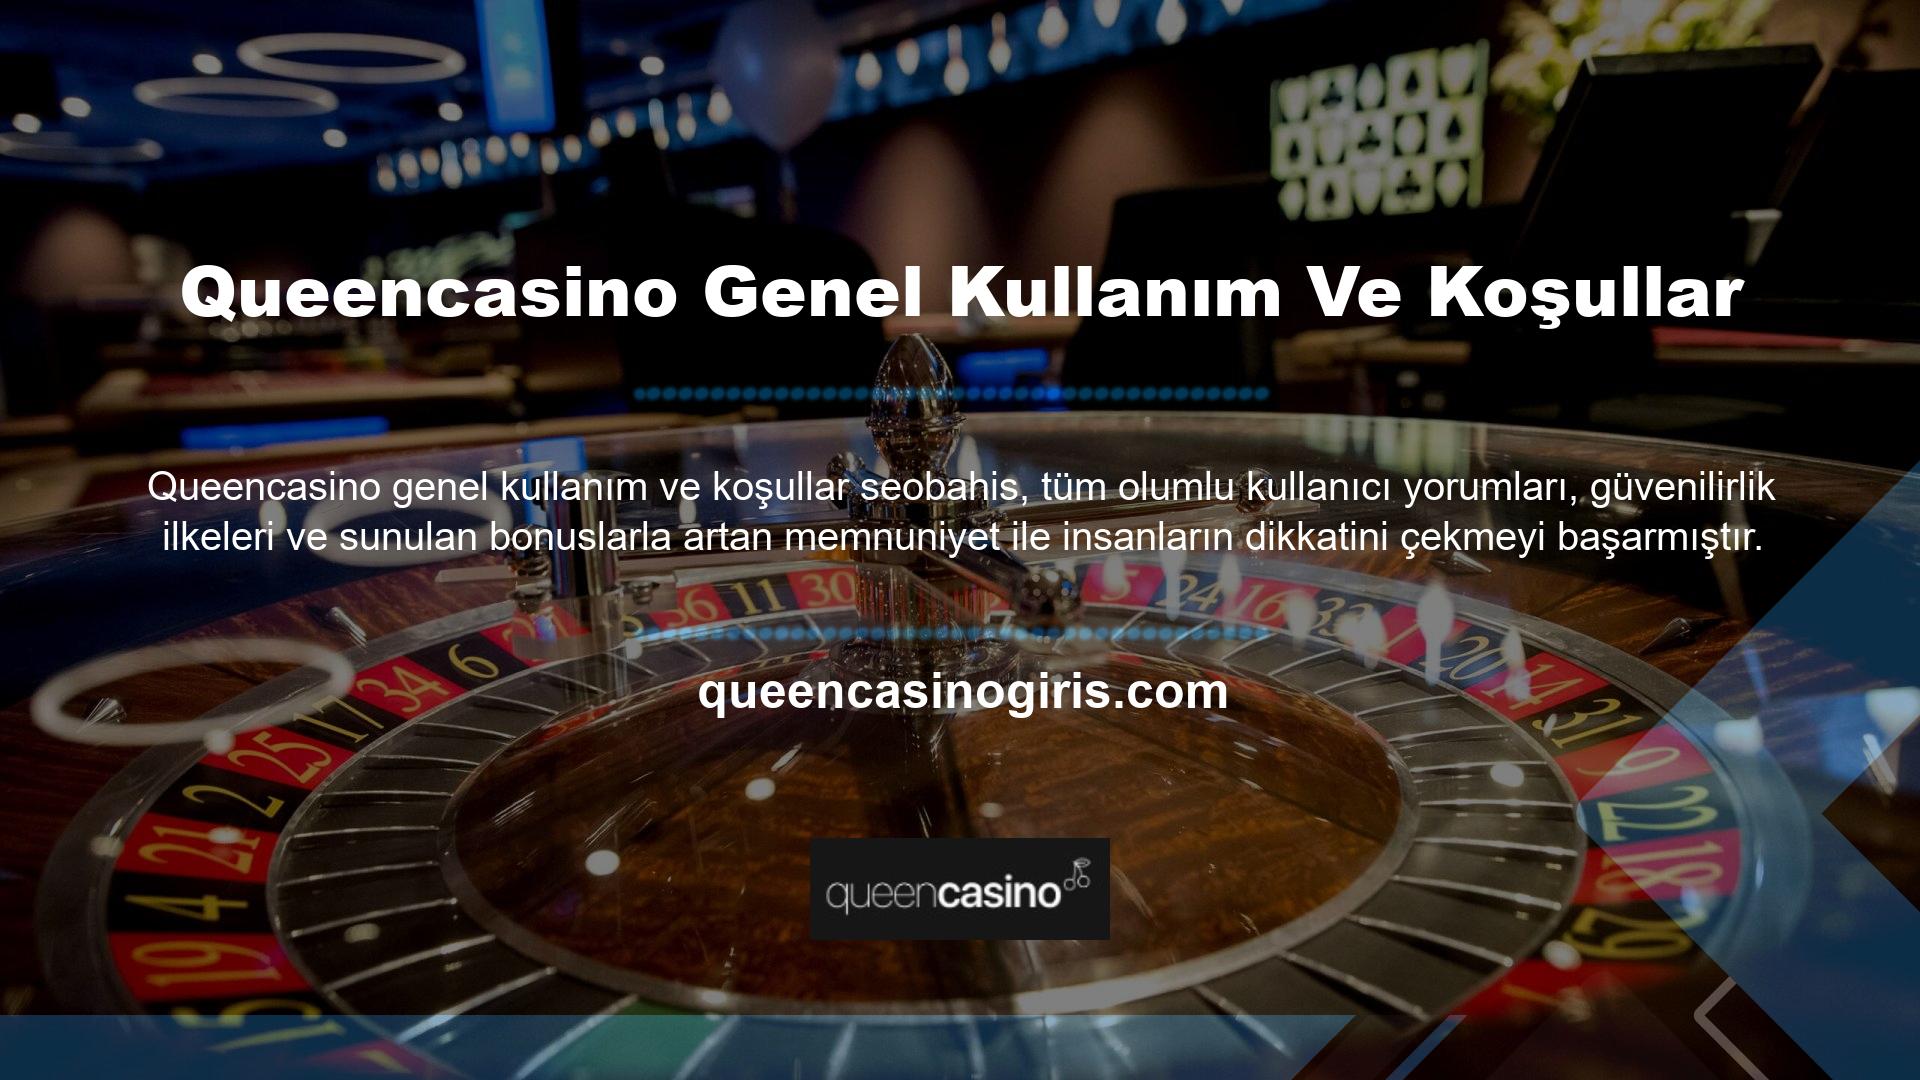 Queencasino, güçlü finansal kaynaklara sahip olmasına rağmen, hizmet anlayışı tamamen kullanıcı memnuniyetine dayalıdır ve şu anda en aktif üye casino sitelerinden biridir